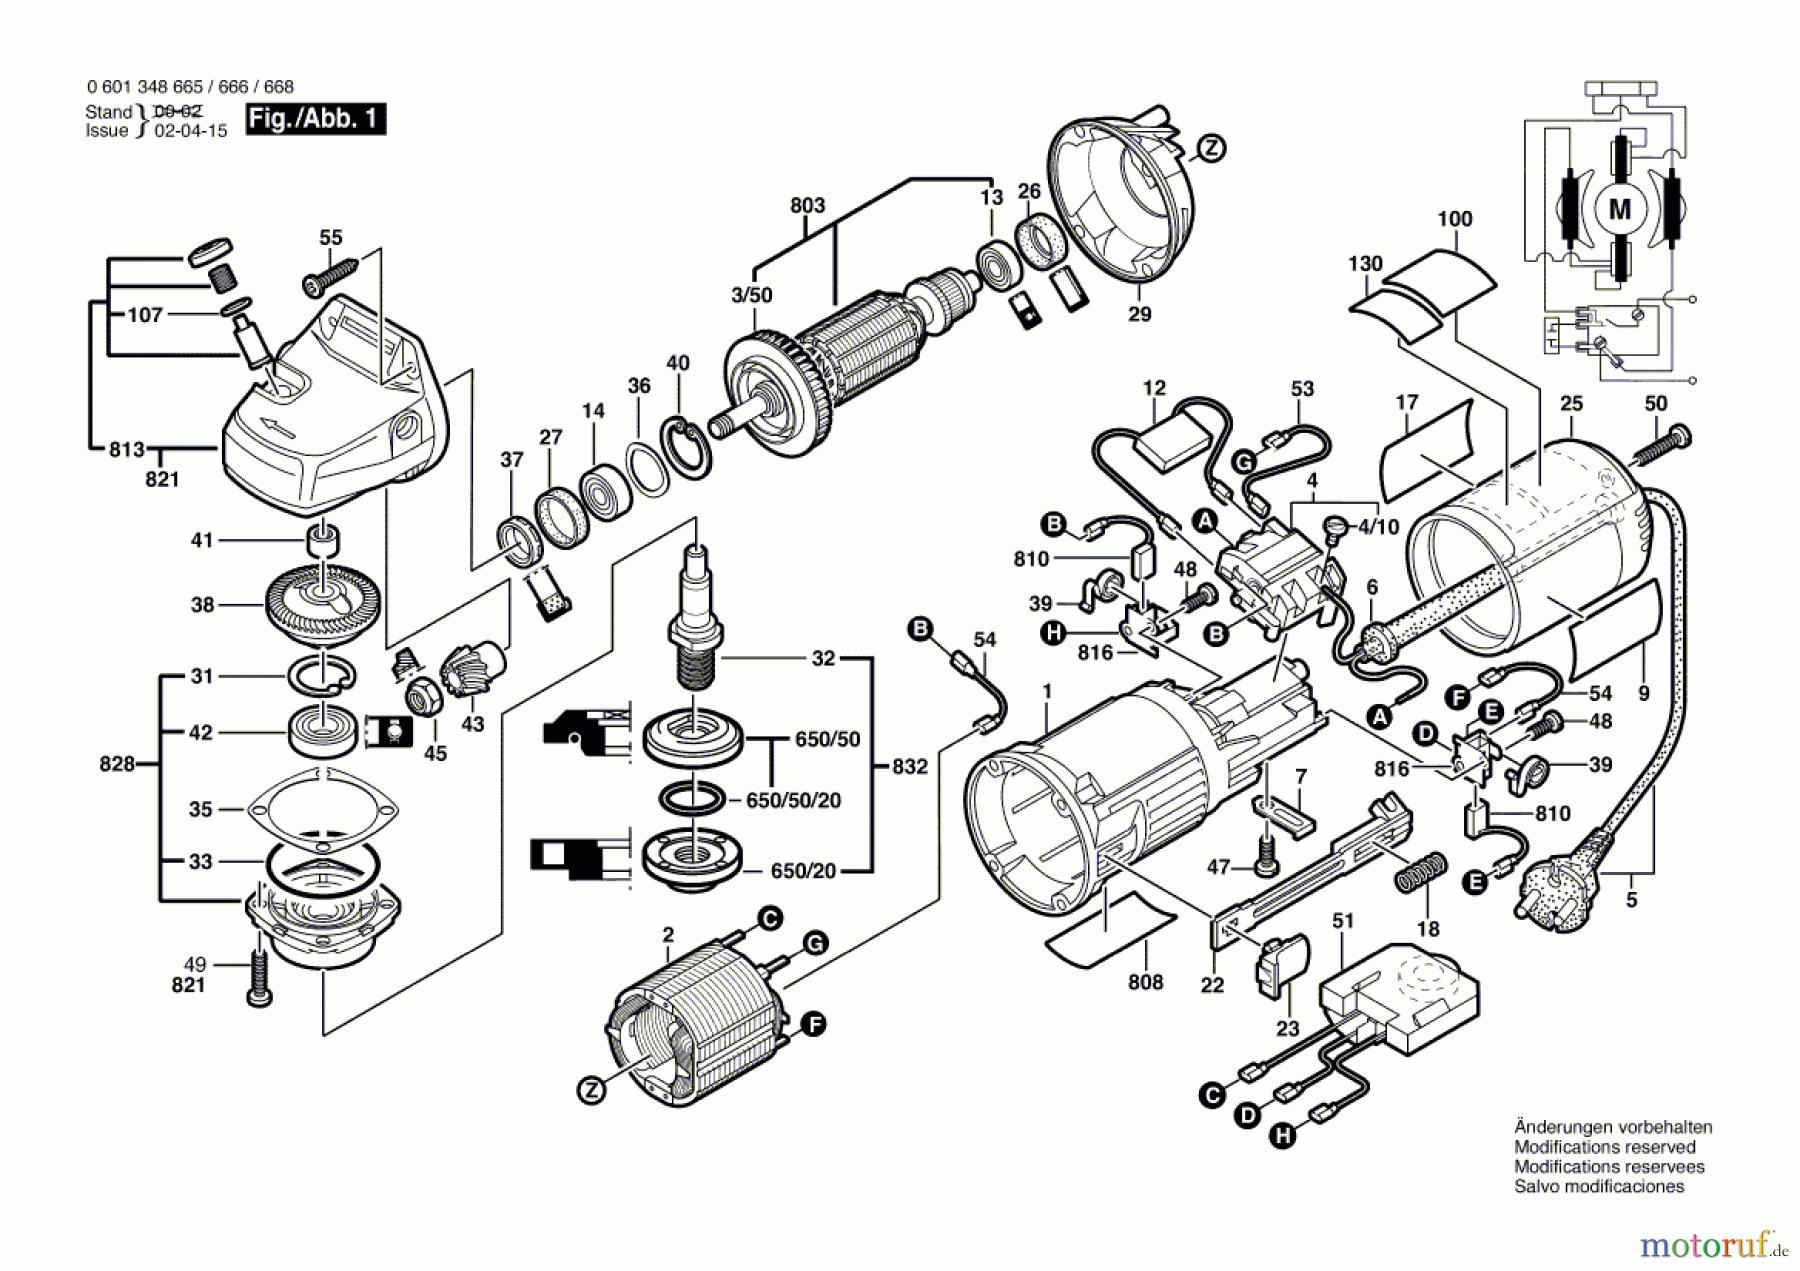  Bosch Werkzeug Winkelschleifer WS 125 S Seite 1